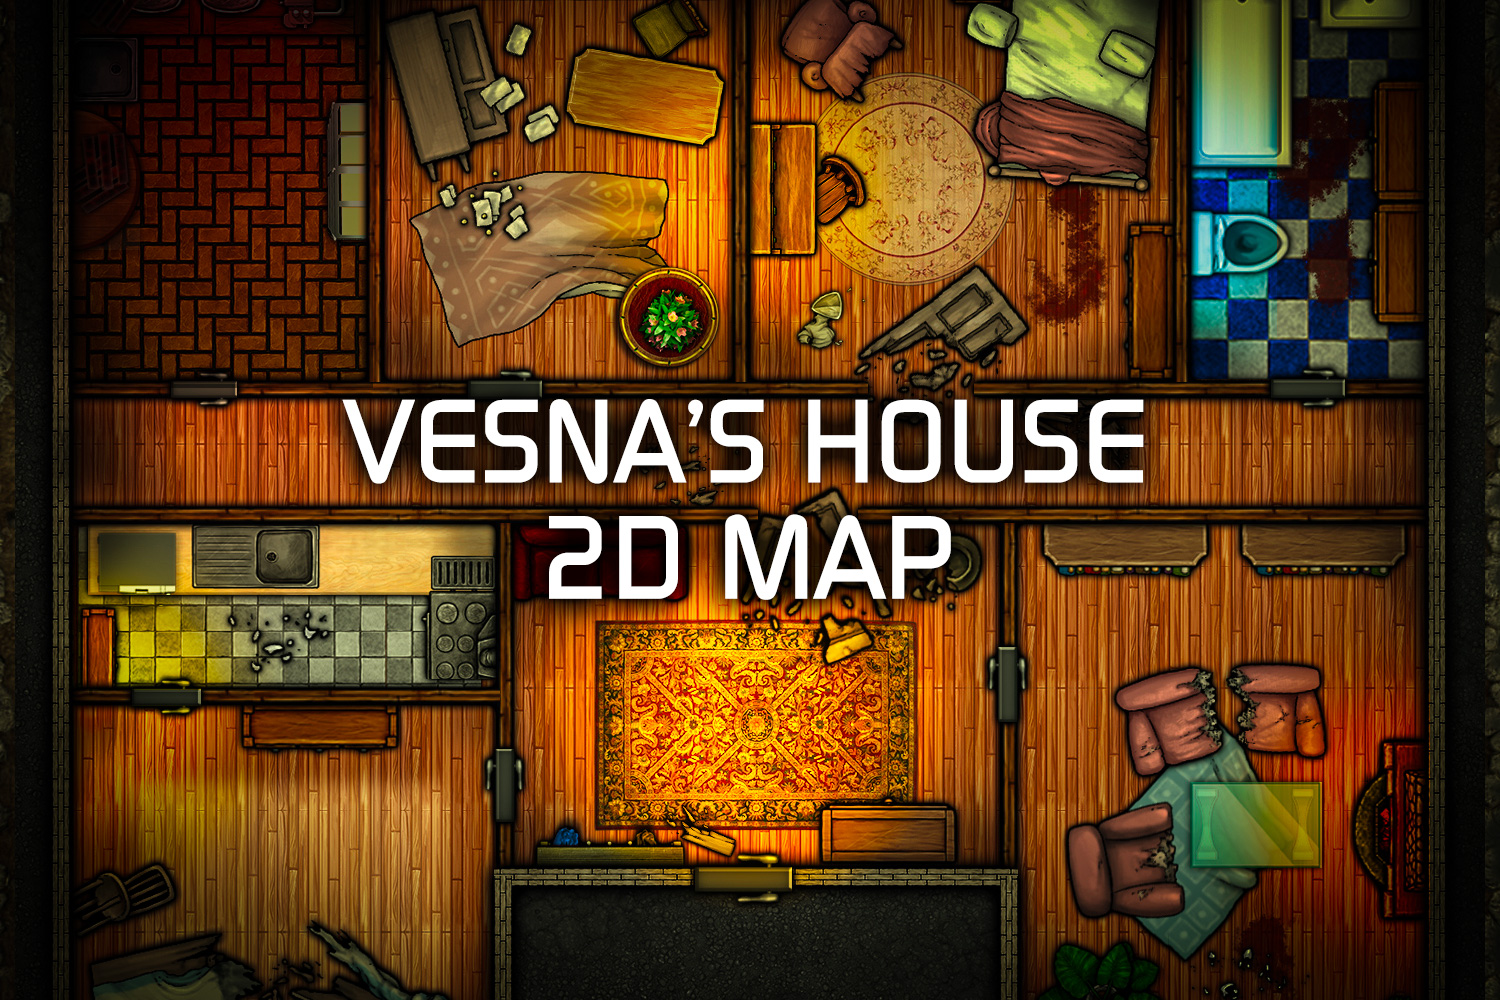 VESNA’S HOUSE